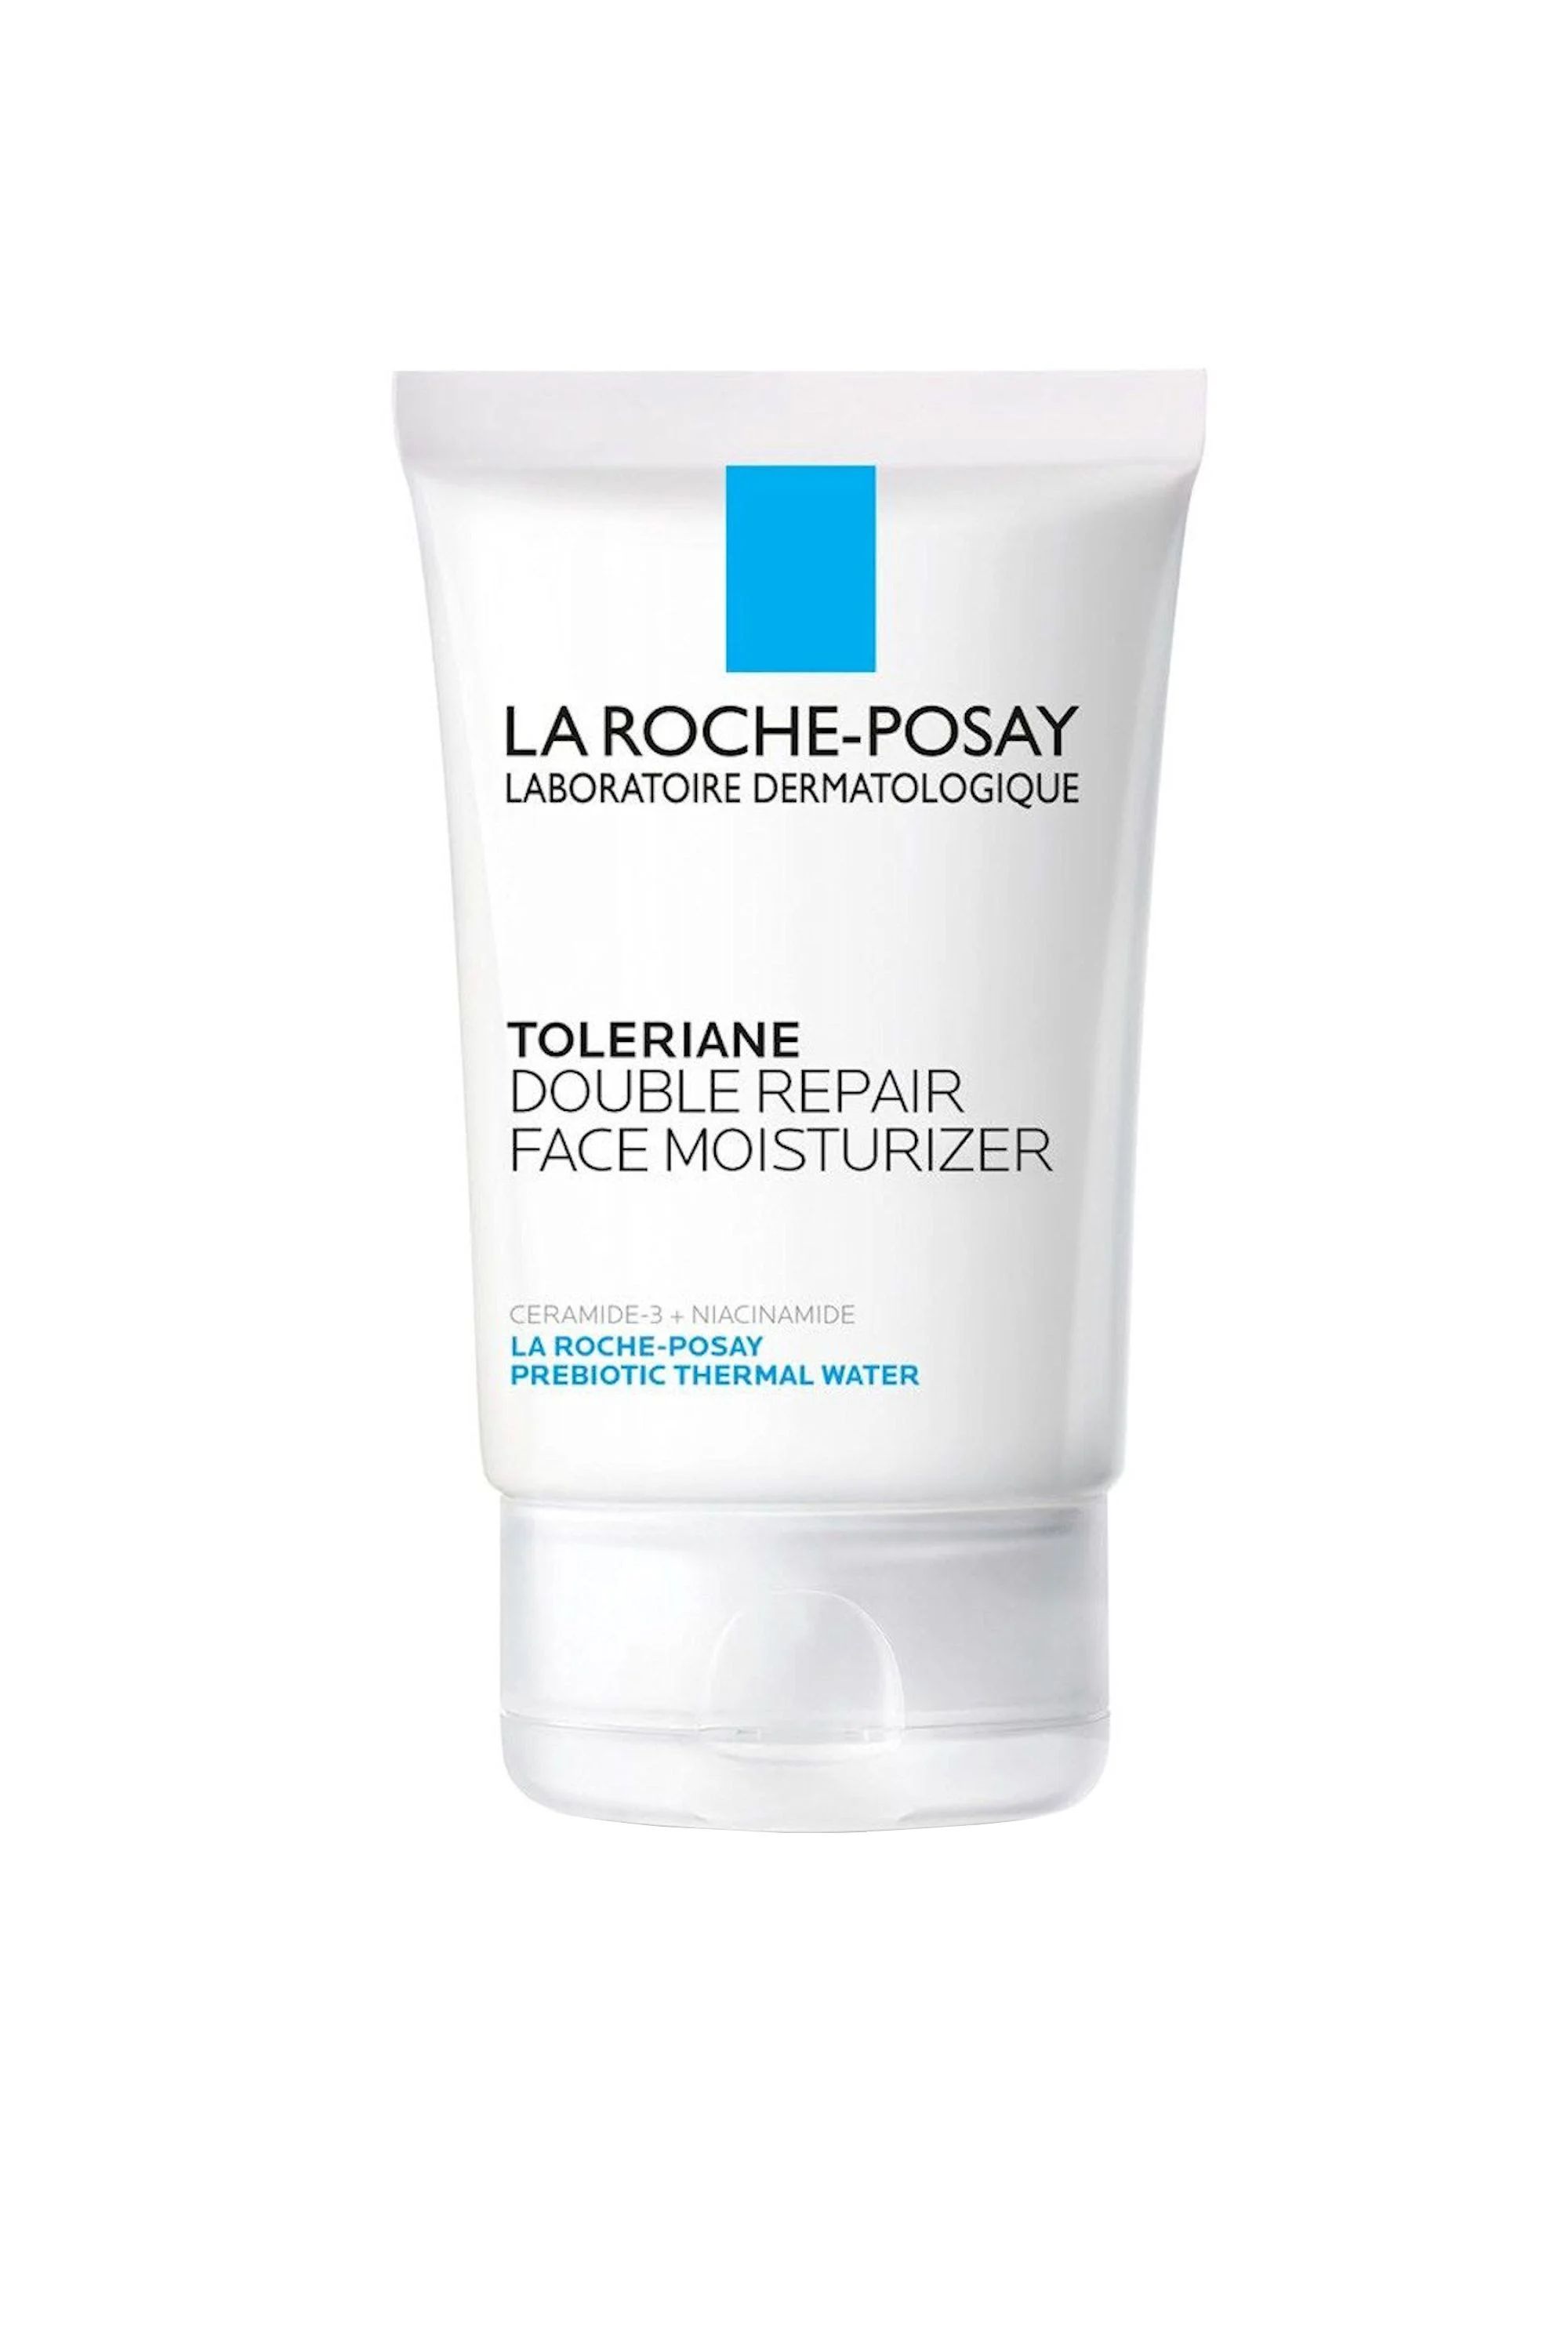 La Roche-Posay Toleriane Double Repair oil-Free Daily Facial Moisturizer 2.5 fl oz (75ml) | Walmart (US)